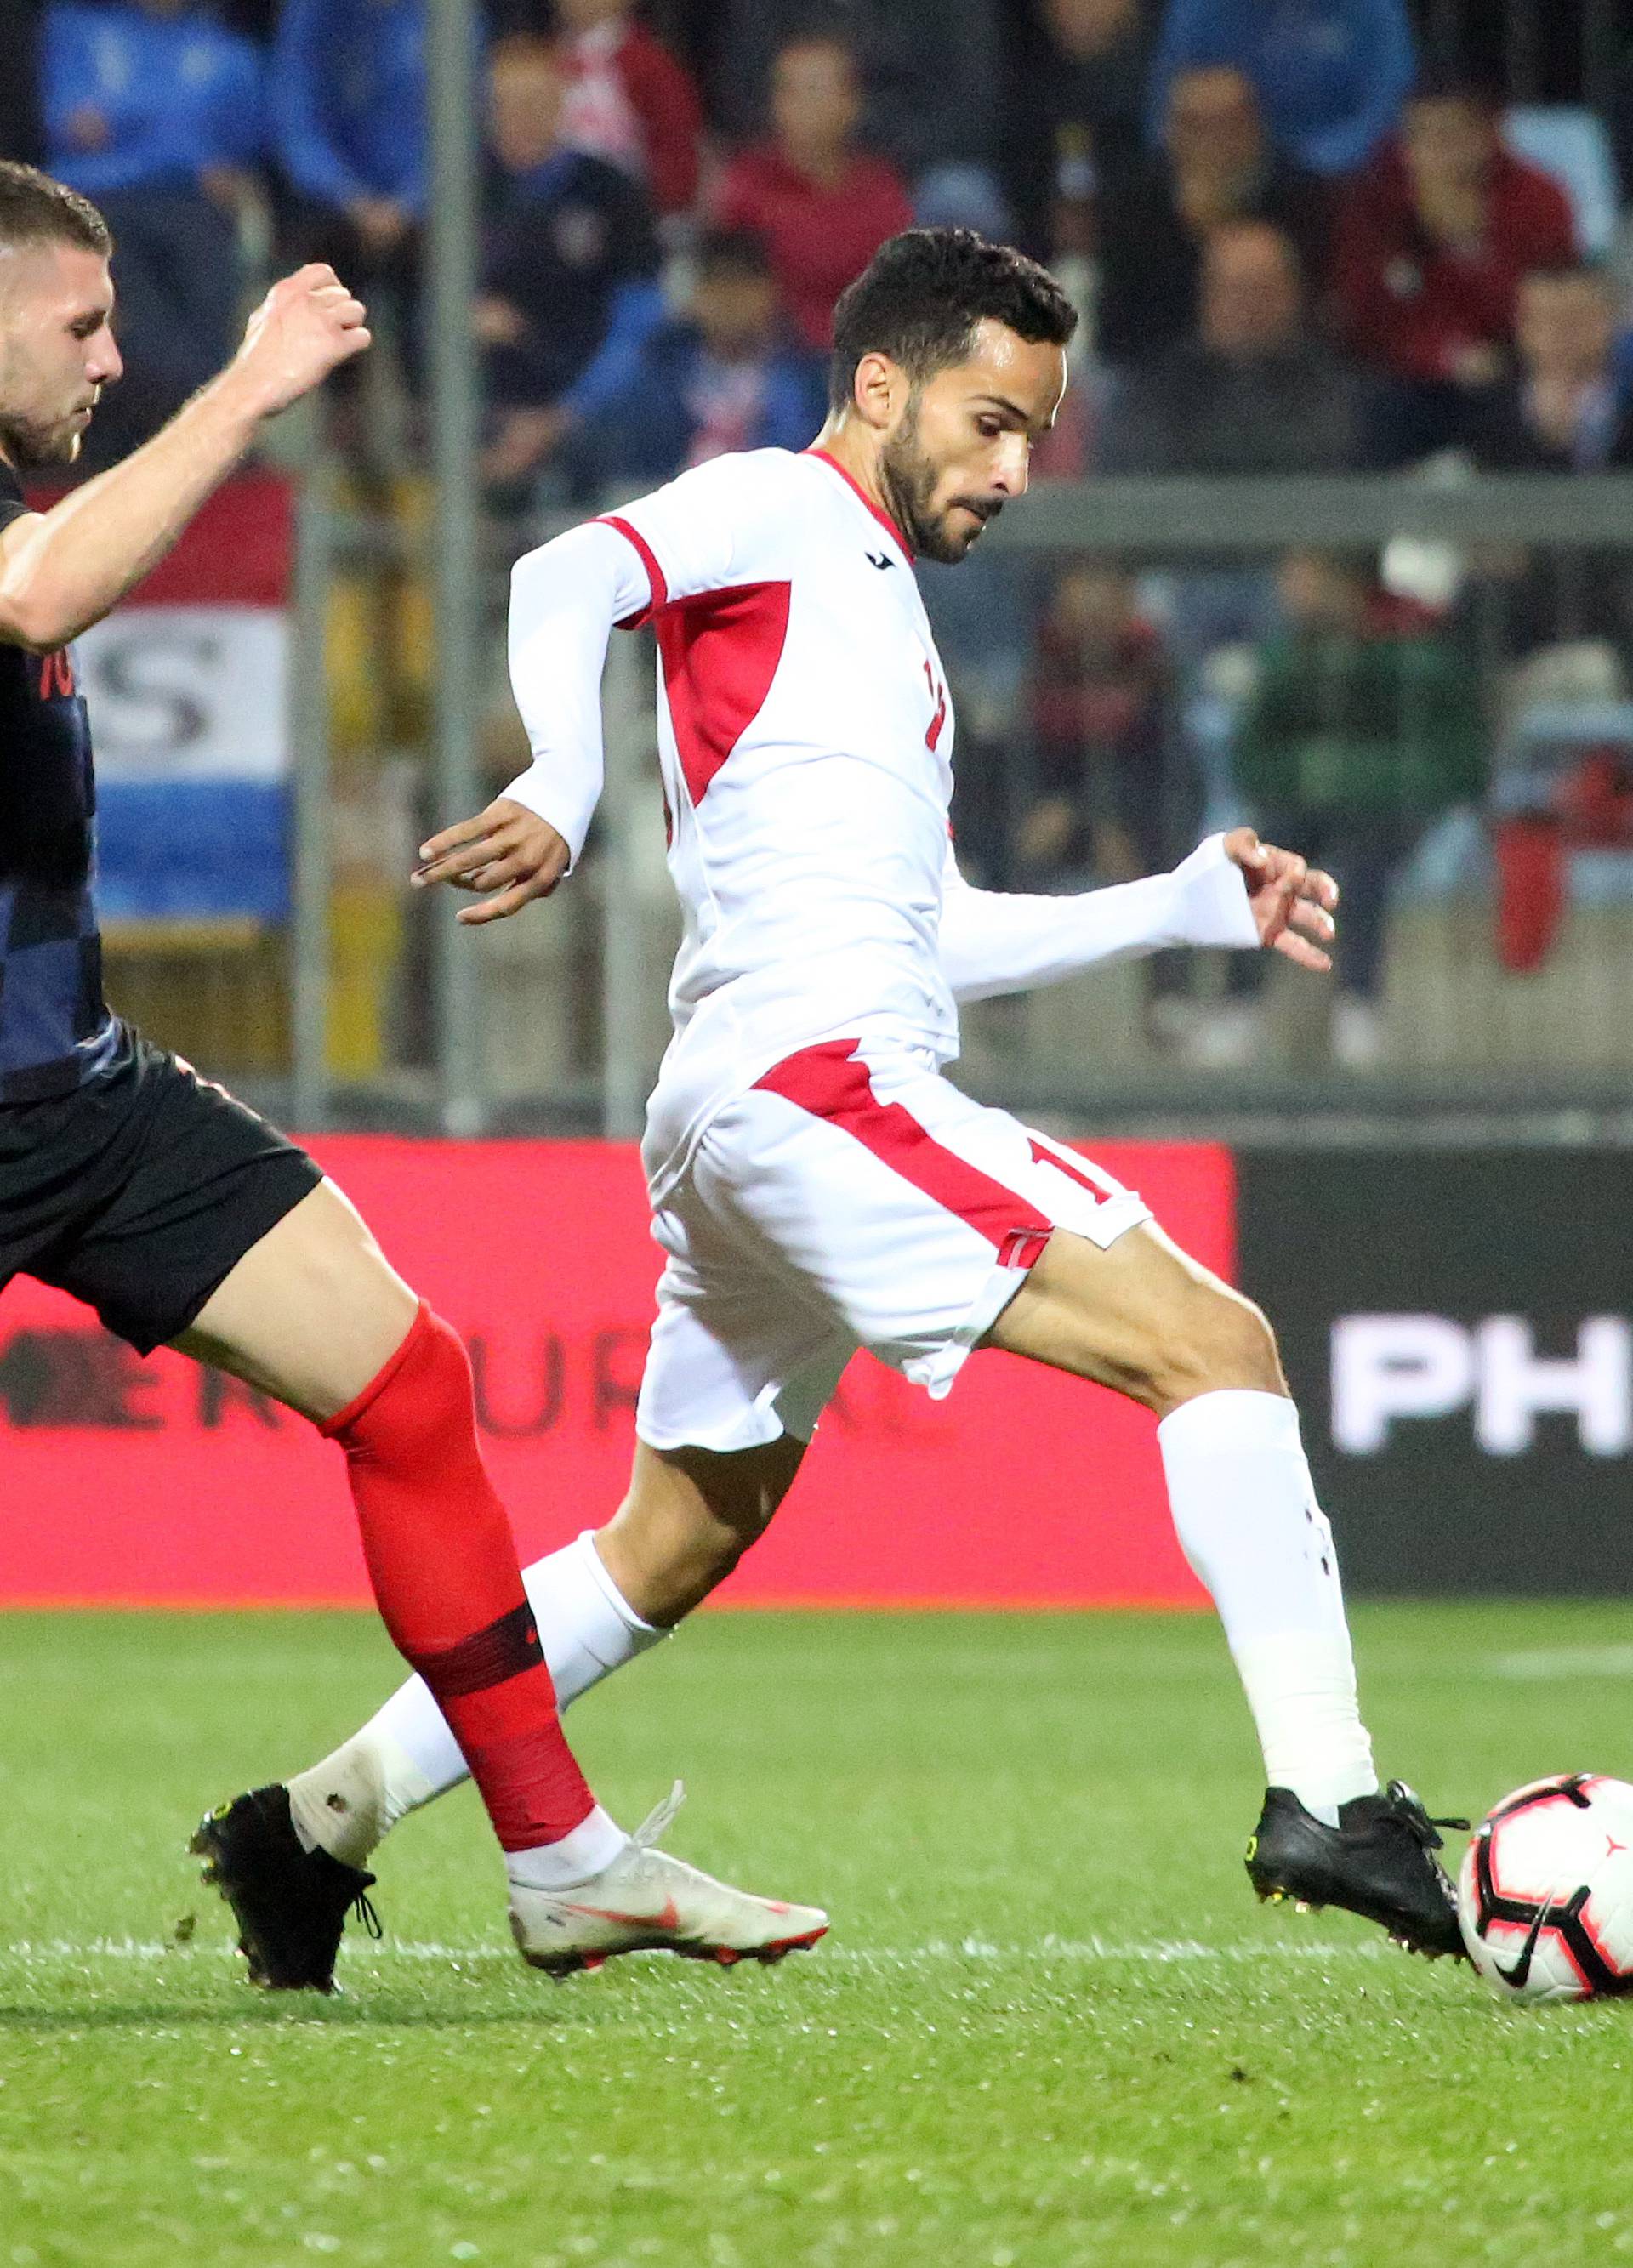 Rijeka: Susret Hrvatske i Jordana u prijateljskoj utakmici